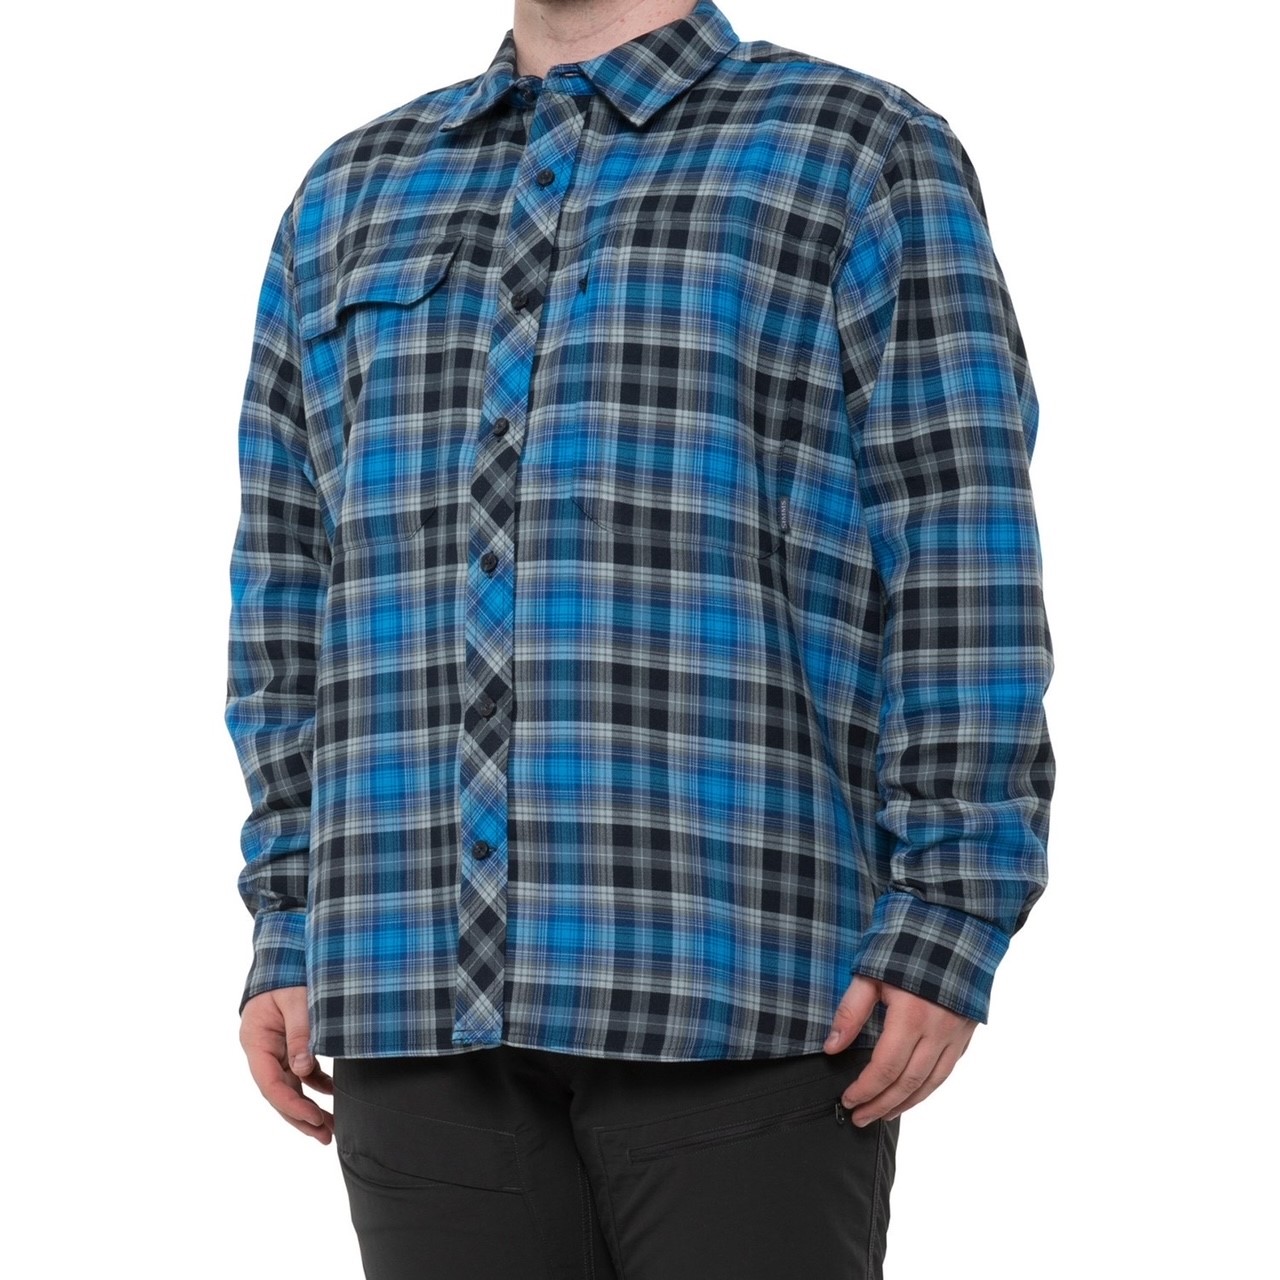 Simms M's Guide Flannel Shirt - Admiral Blue Plaid - XL